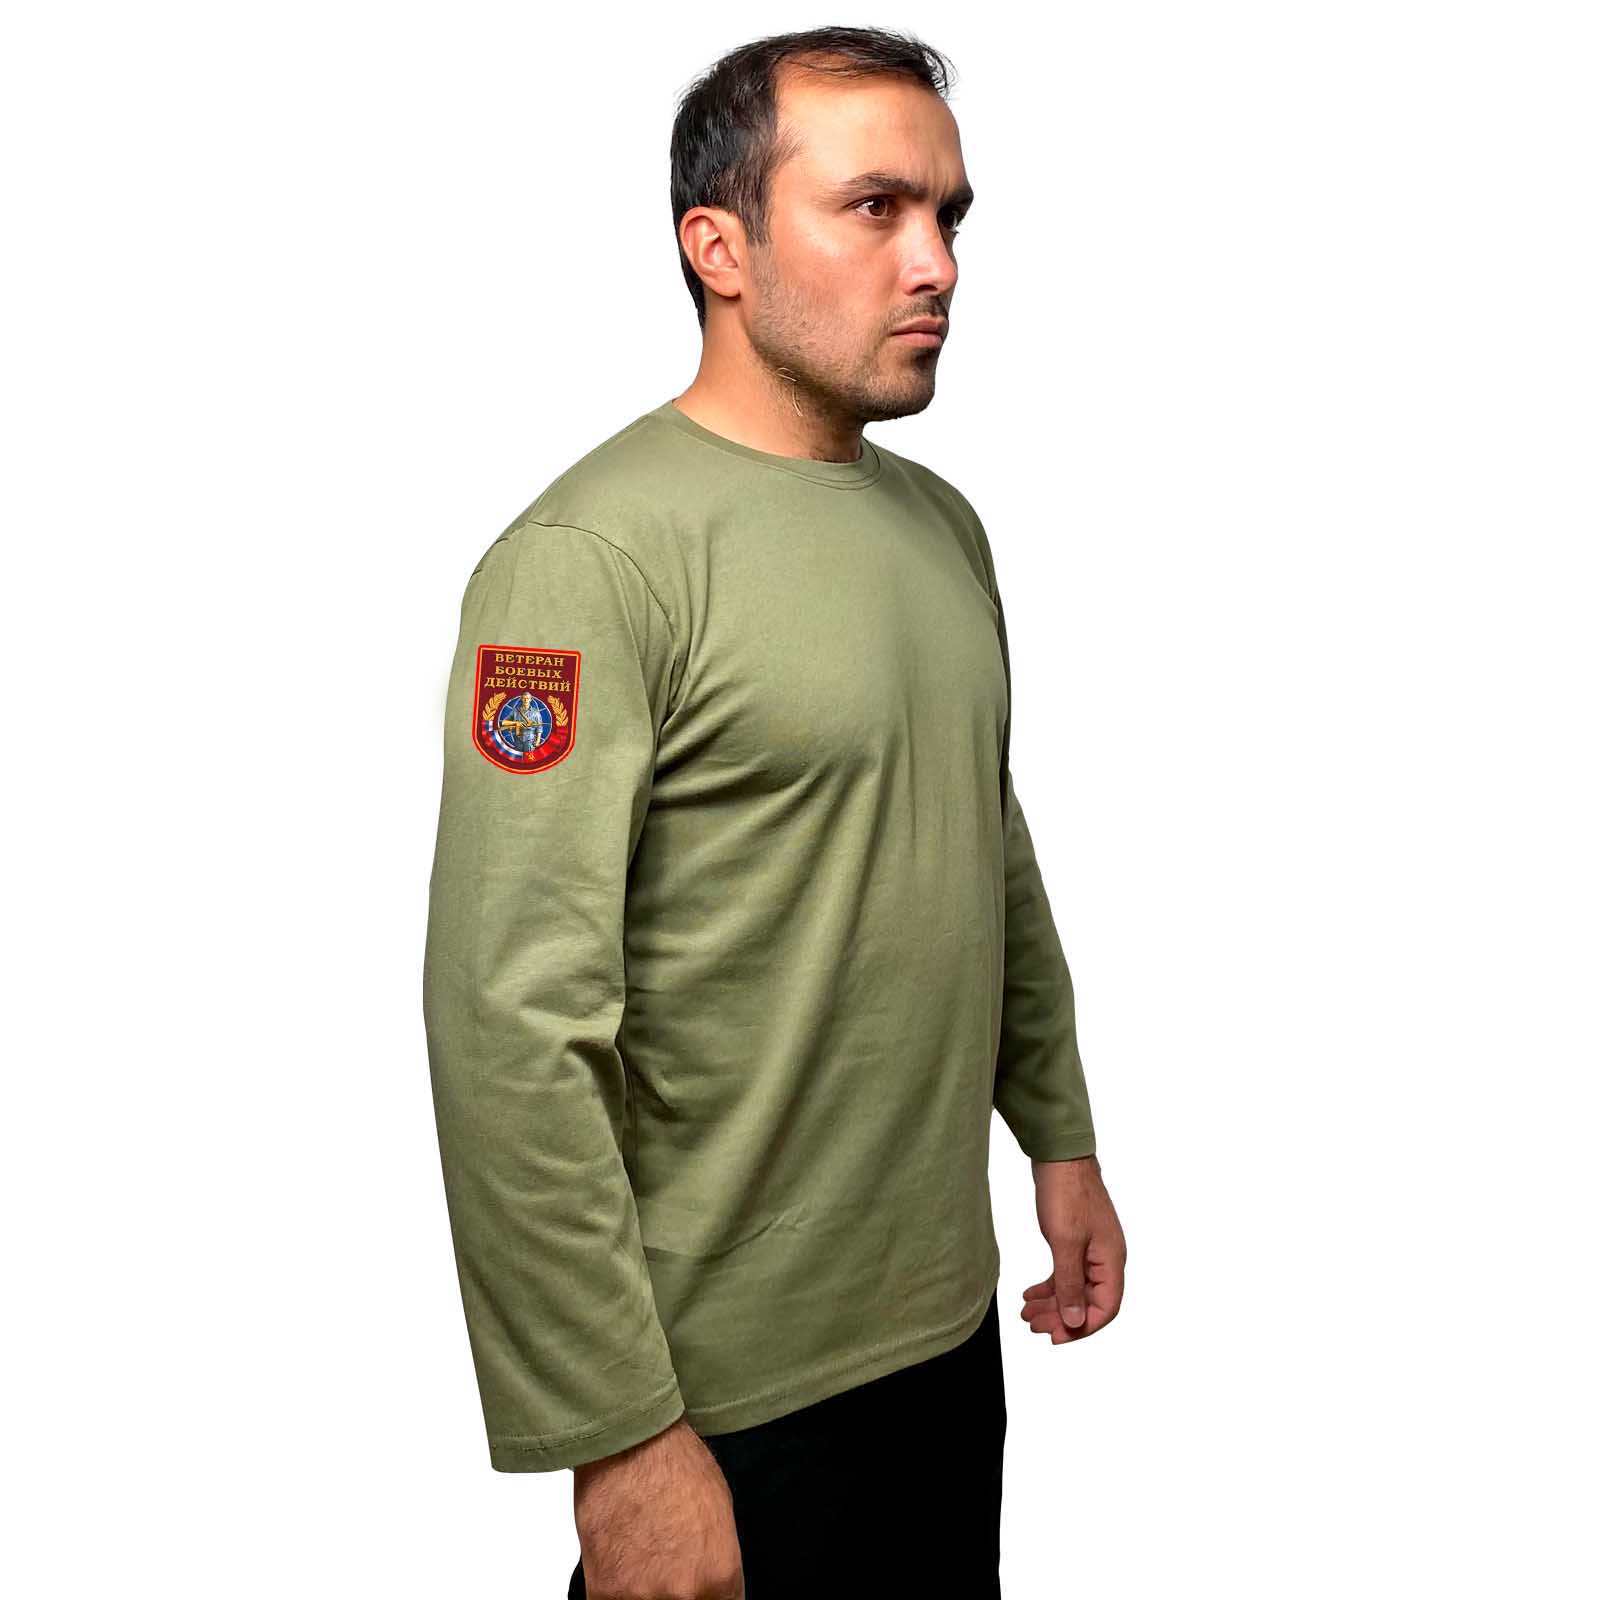 Купить надежную футболку с длинным рукавом с термотрансфером Ветеран боевых действий выгодно